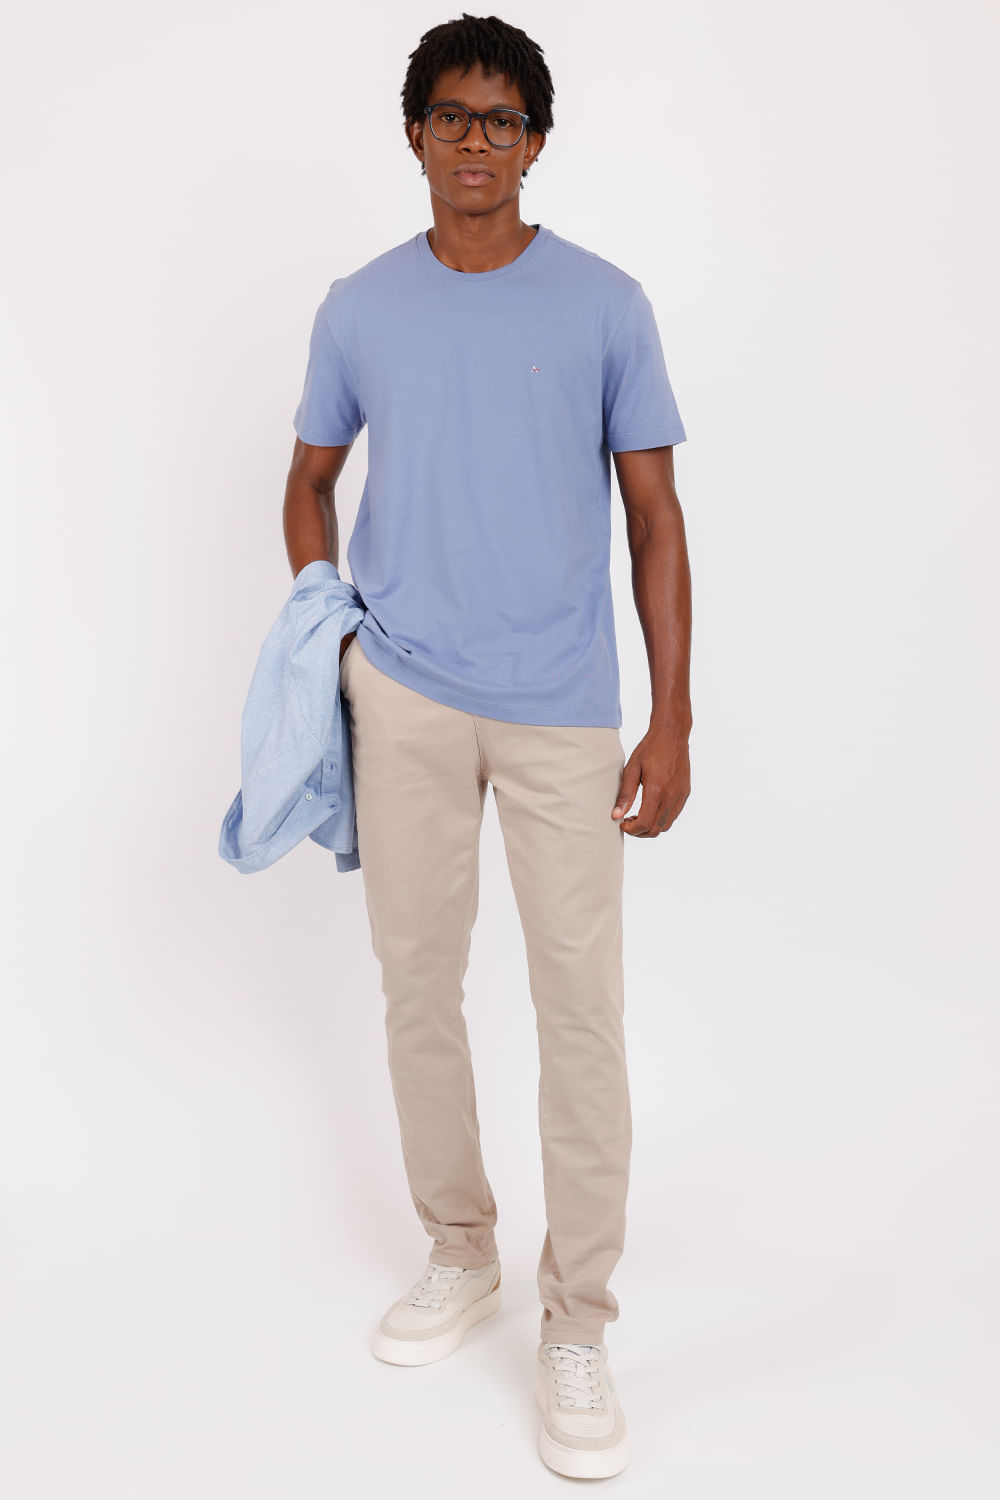 Camiseta Básica Malha Regular Alumínio - Aramis - Loja de Roupa Masculina:  Polo, Camisa, Alfaiataria e mais